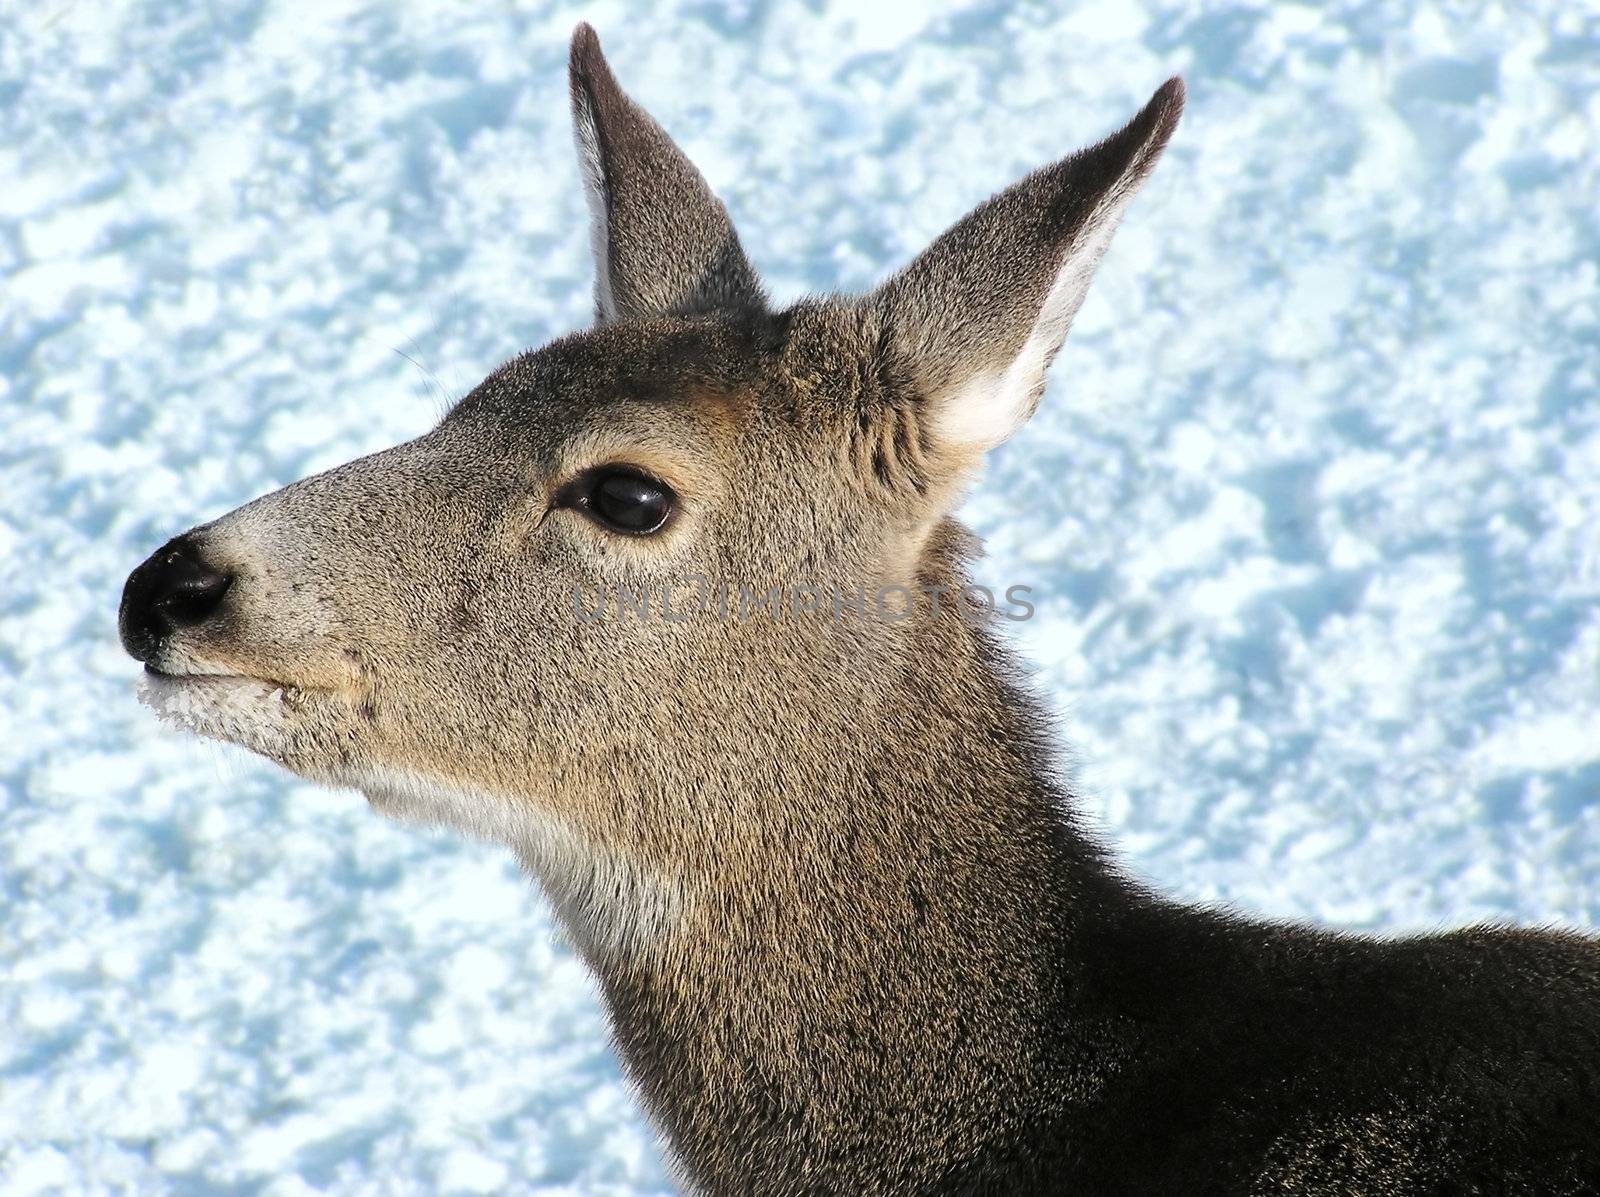 Mule deer female close up by Mirage3